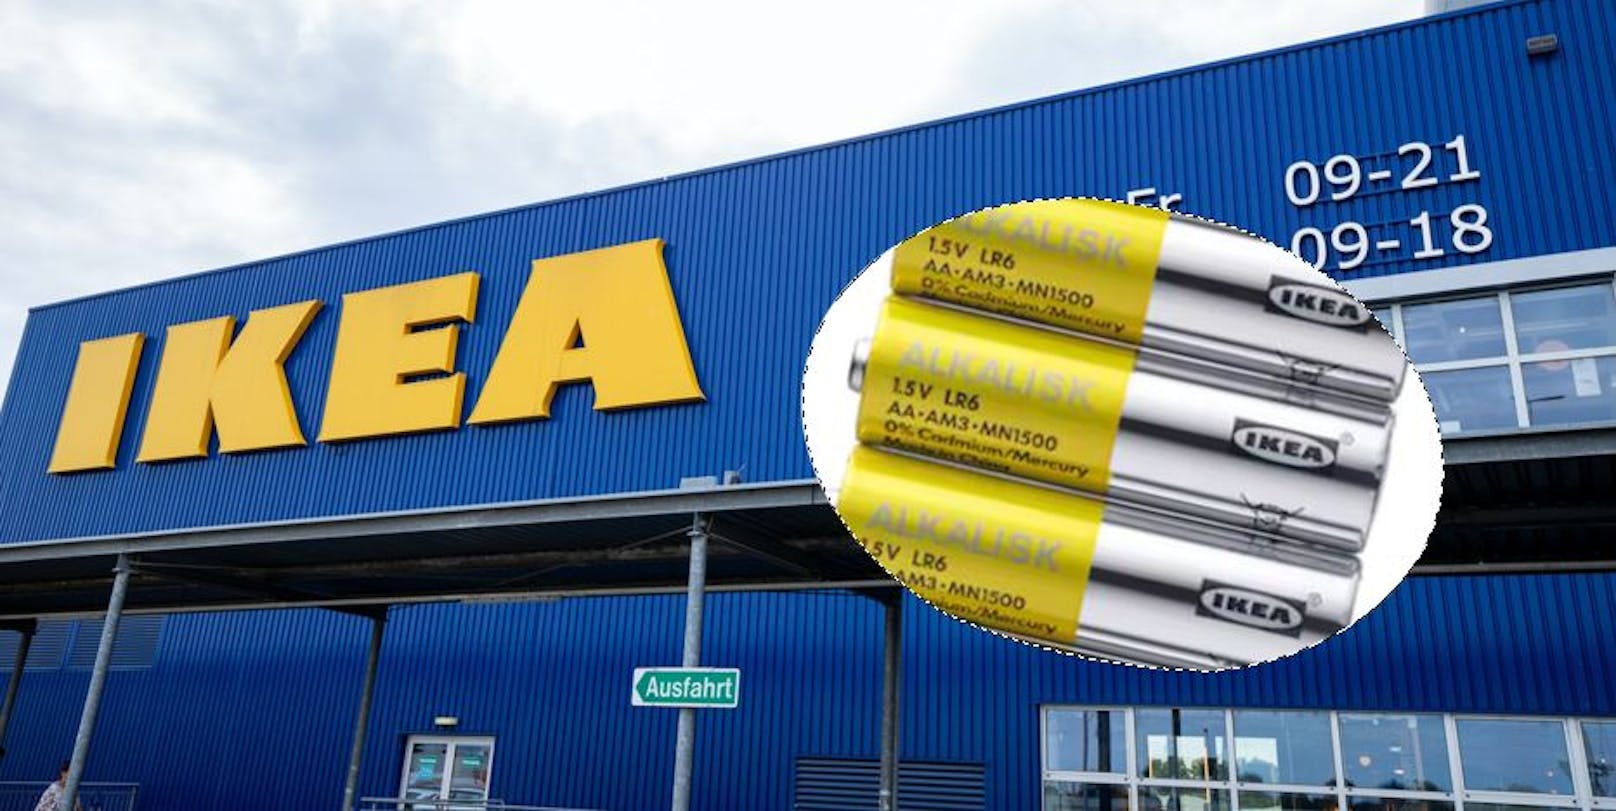 Batterien raus! Für den Umweltschutz greift Ikea im Sortiment hart durch und schmeißt "Alkalisk" (Bild) raus.